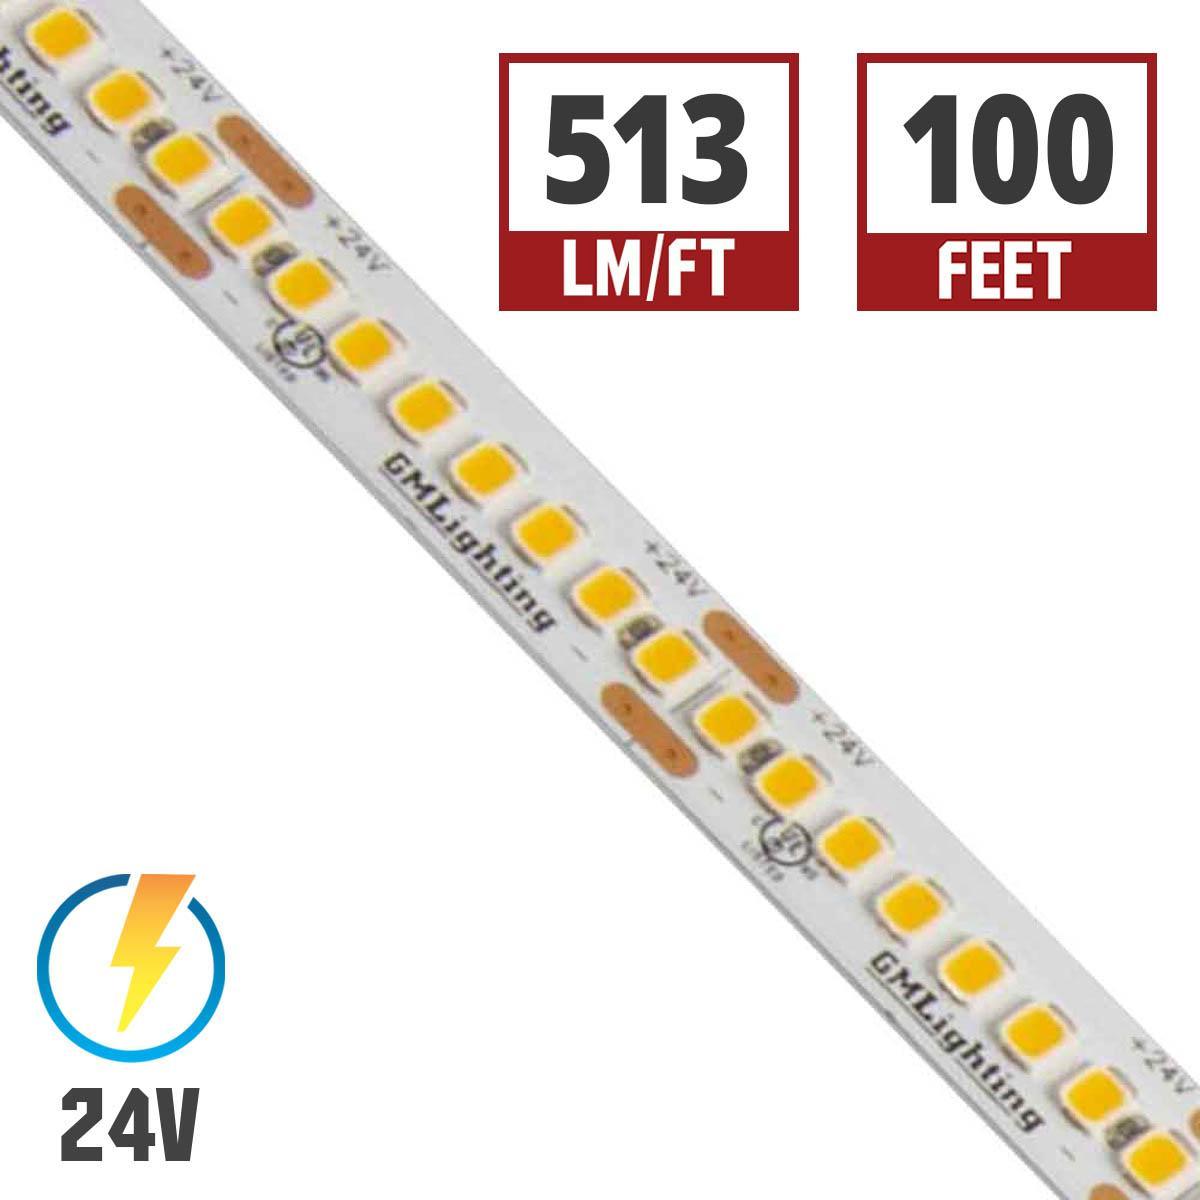 LTR-S Spec LED Strip Light, 510 Lumens per Ft, 5.8 watts per Ft, 24V